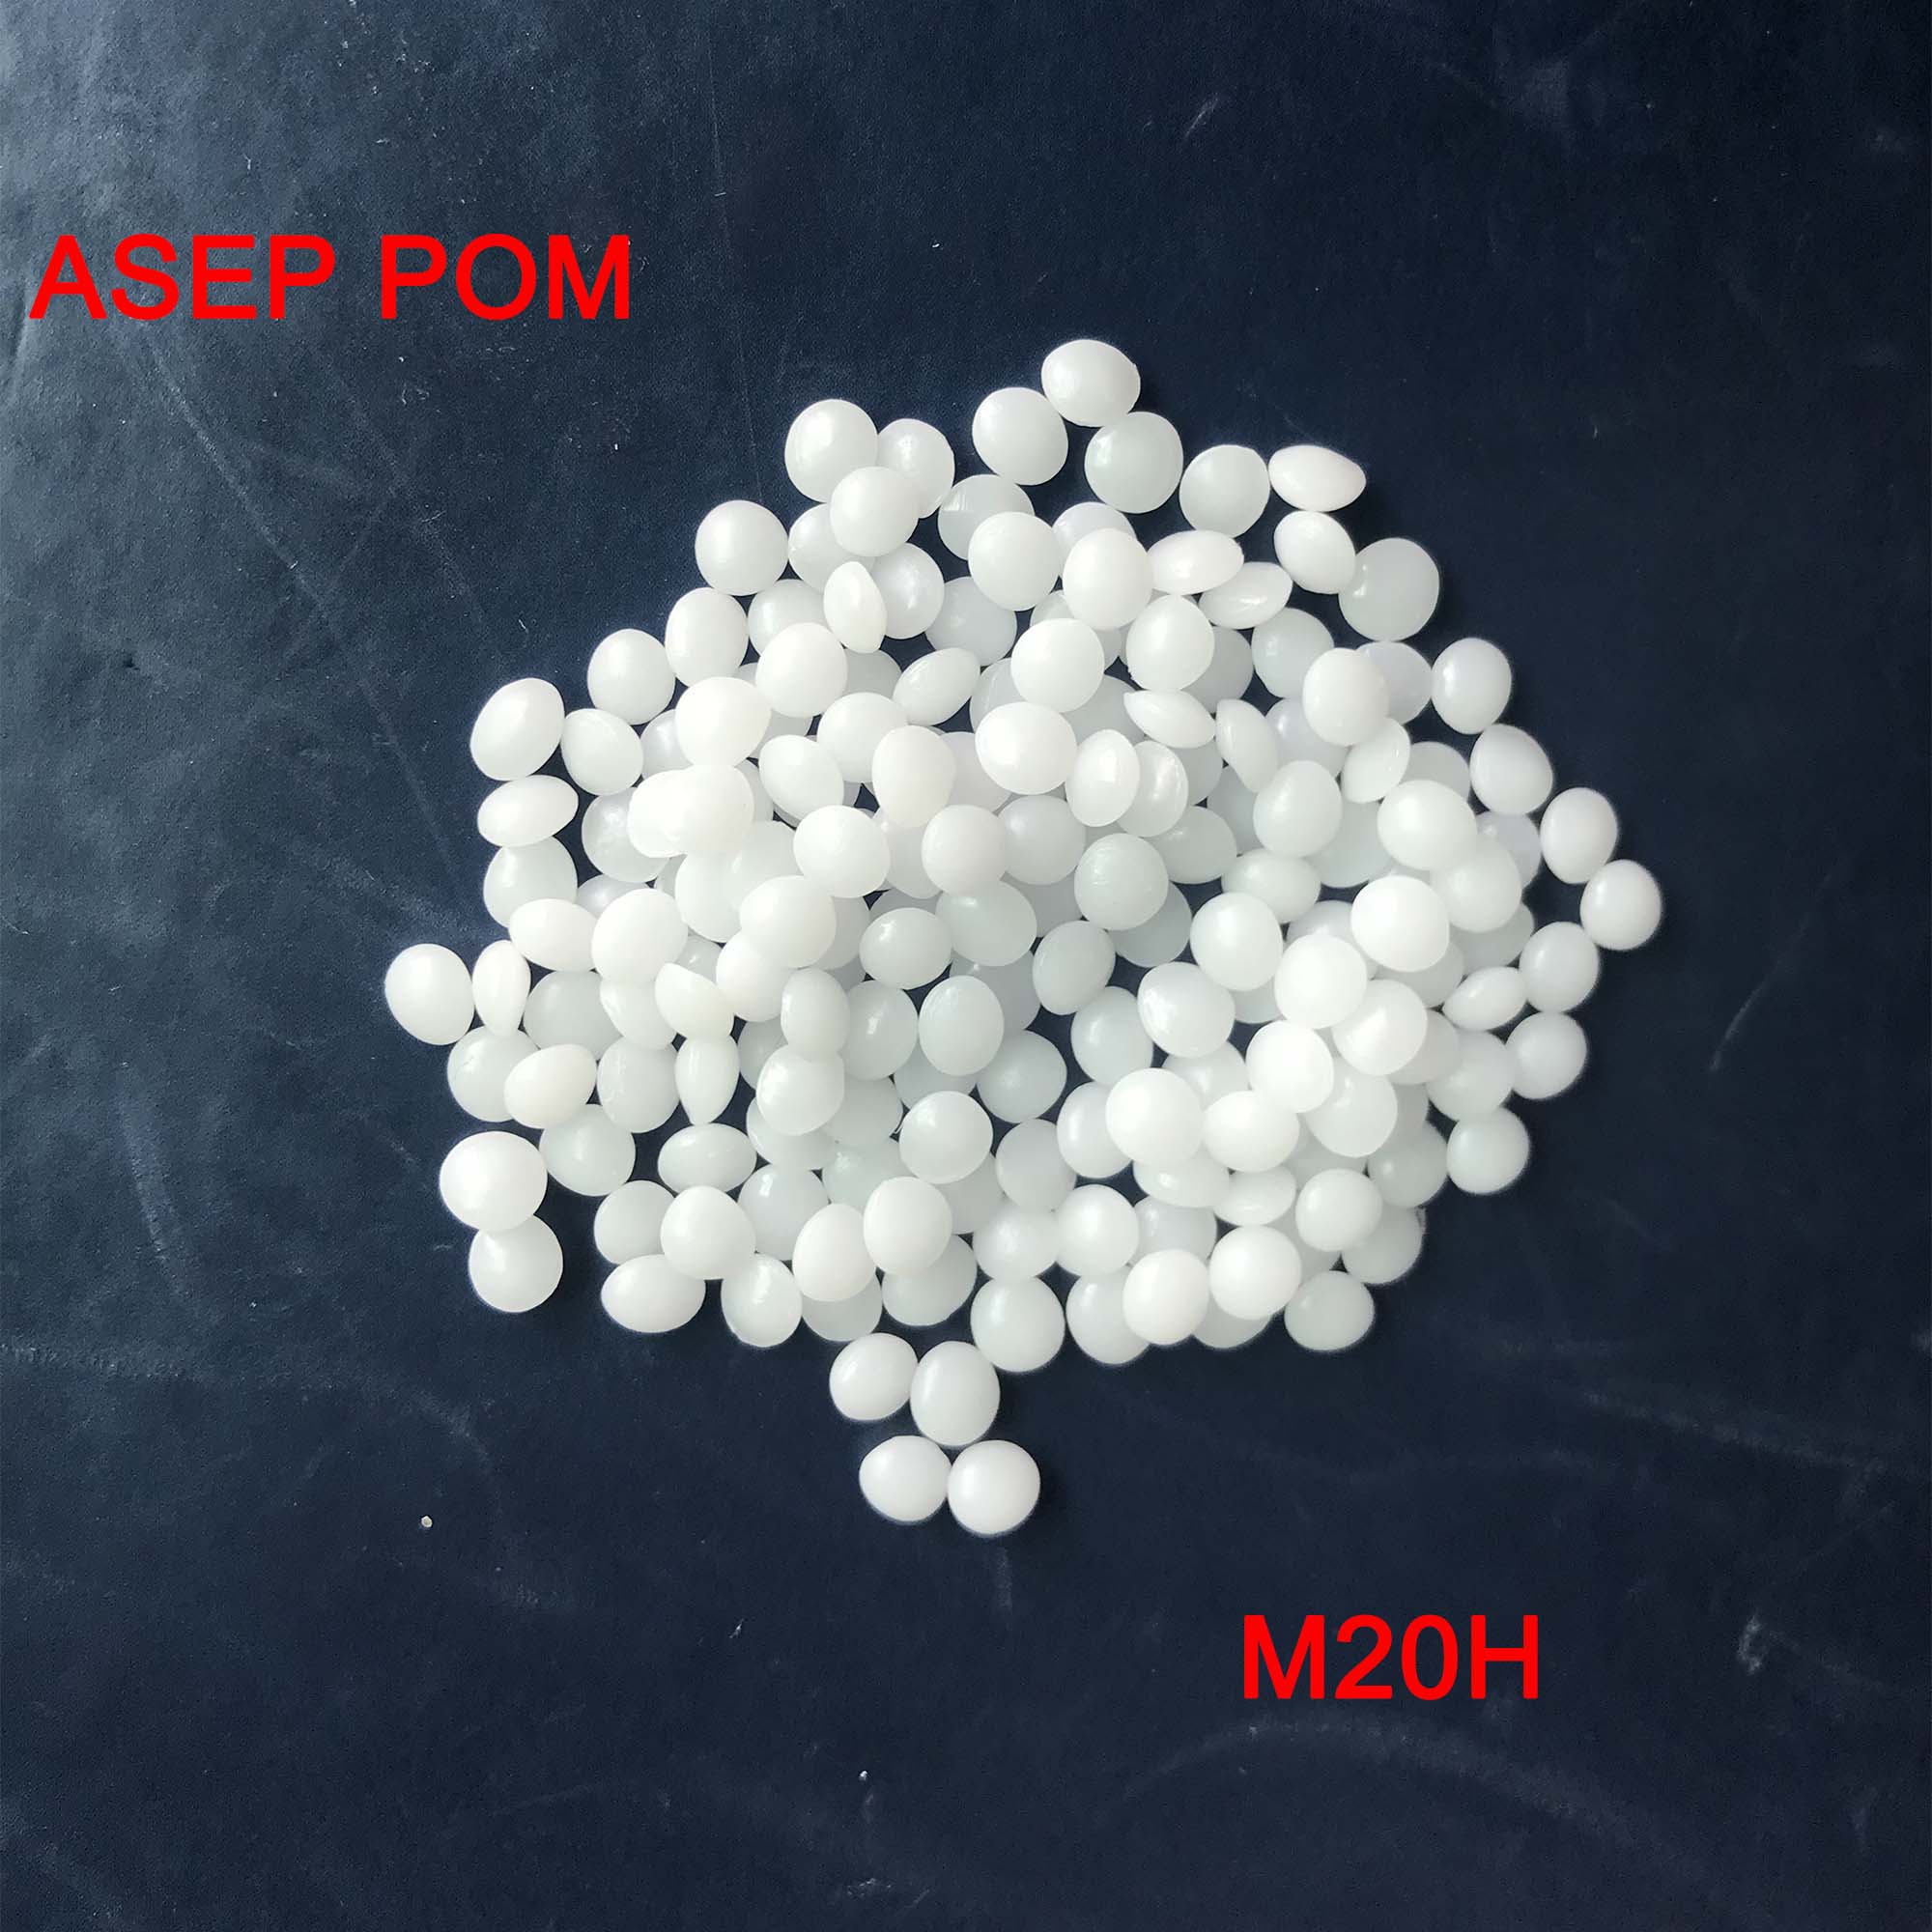 进口优质POM塑料颗粒注塑级通用规格可提供多种配色及改性M20H ASEP POM